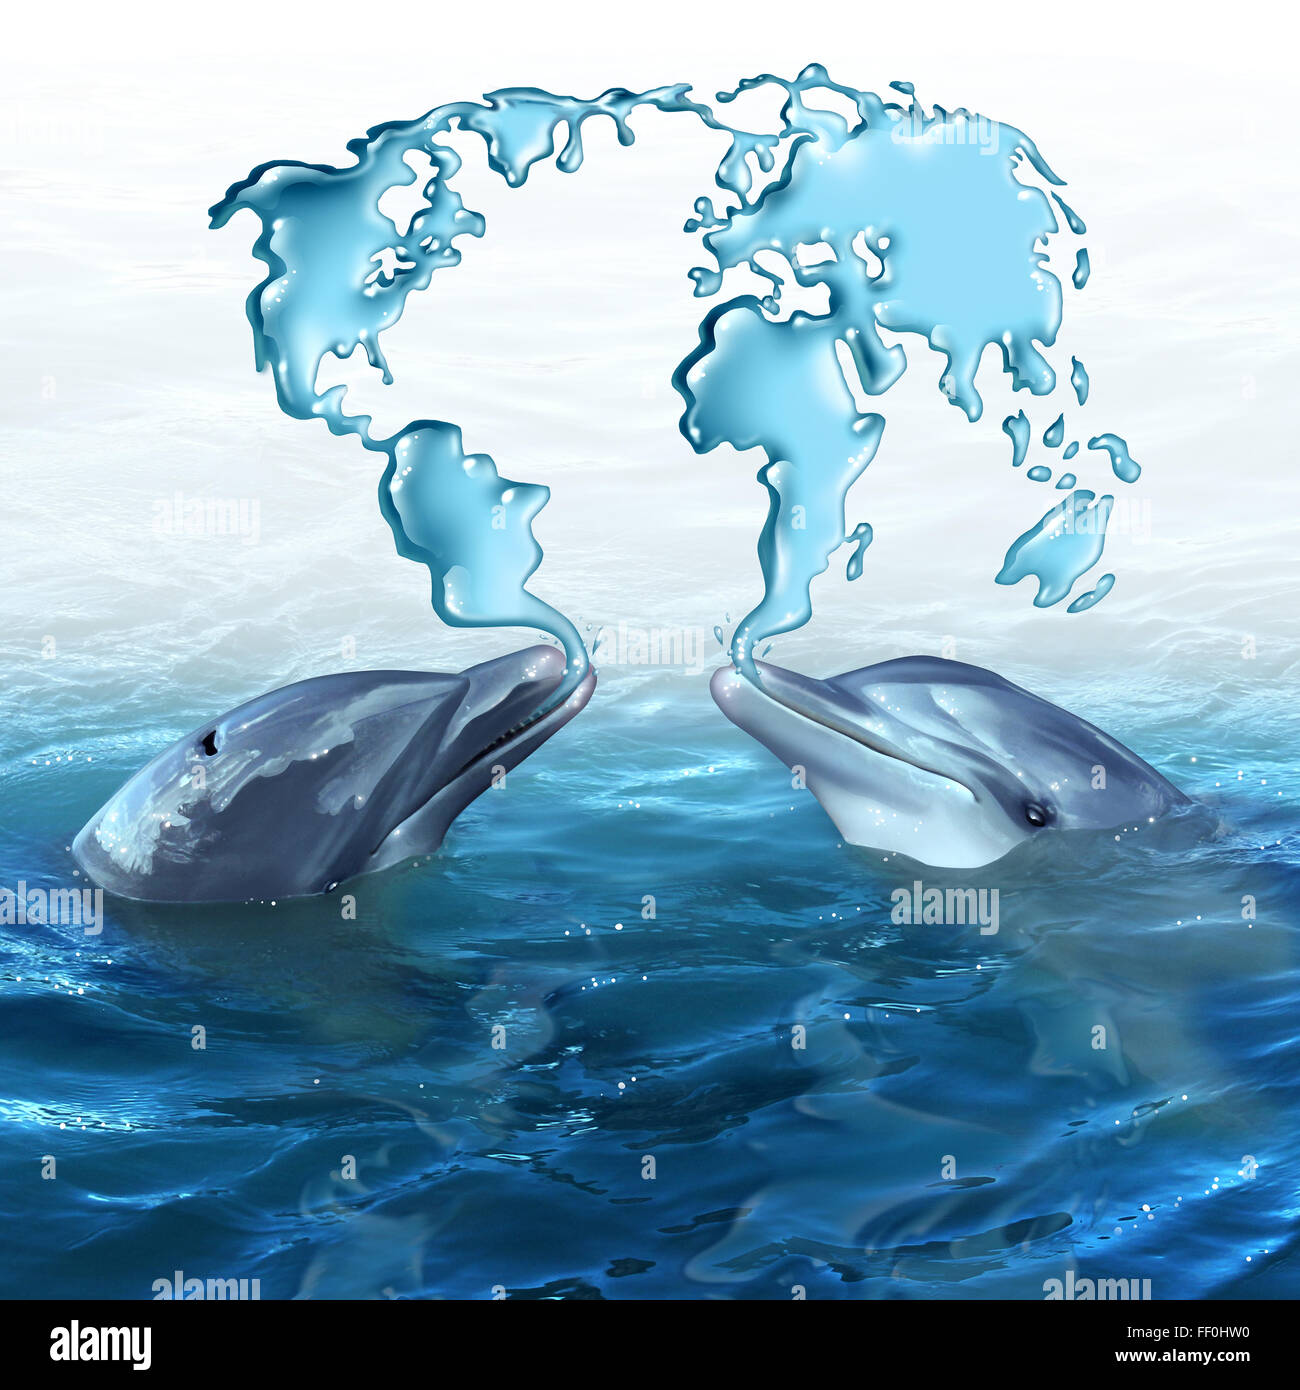 Marine Ökologie-Konzept und Ozean Umweltzeichen als zwei spuckt Wasser aus dem Meer geformt wie eine Weltkarte der Delphine Stockfoto